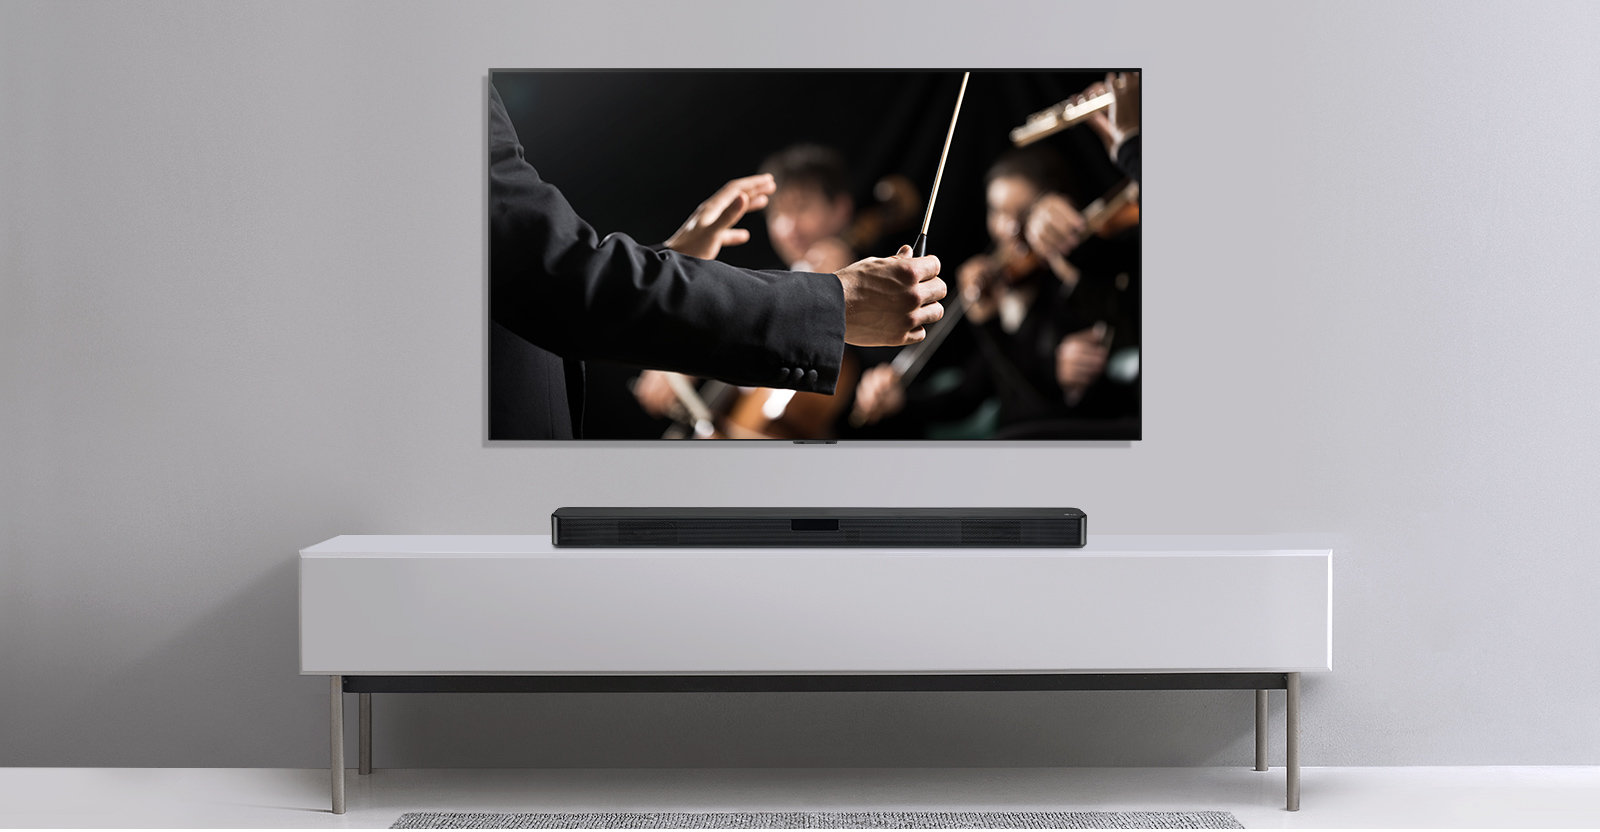 Soundbar LG SN4 300W Czarny widok od przodu, stojący pod telewizorem